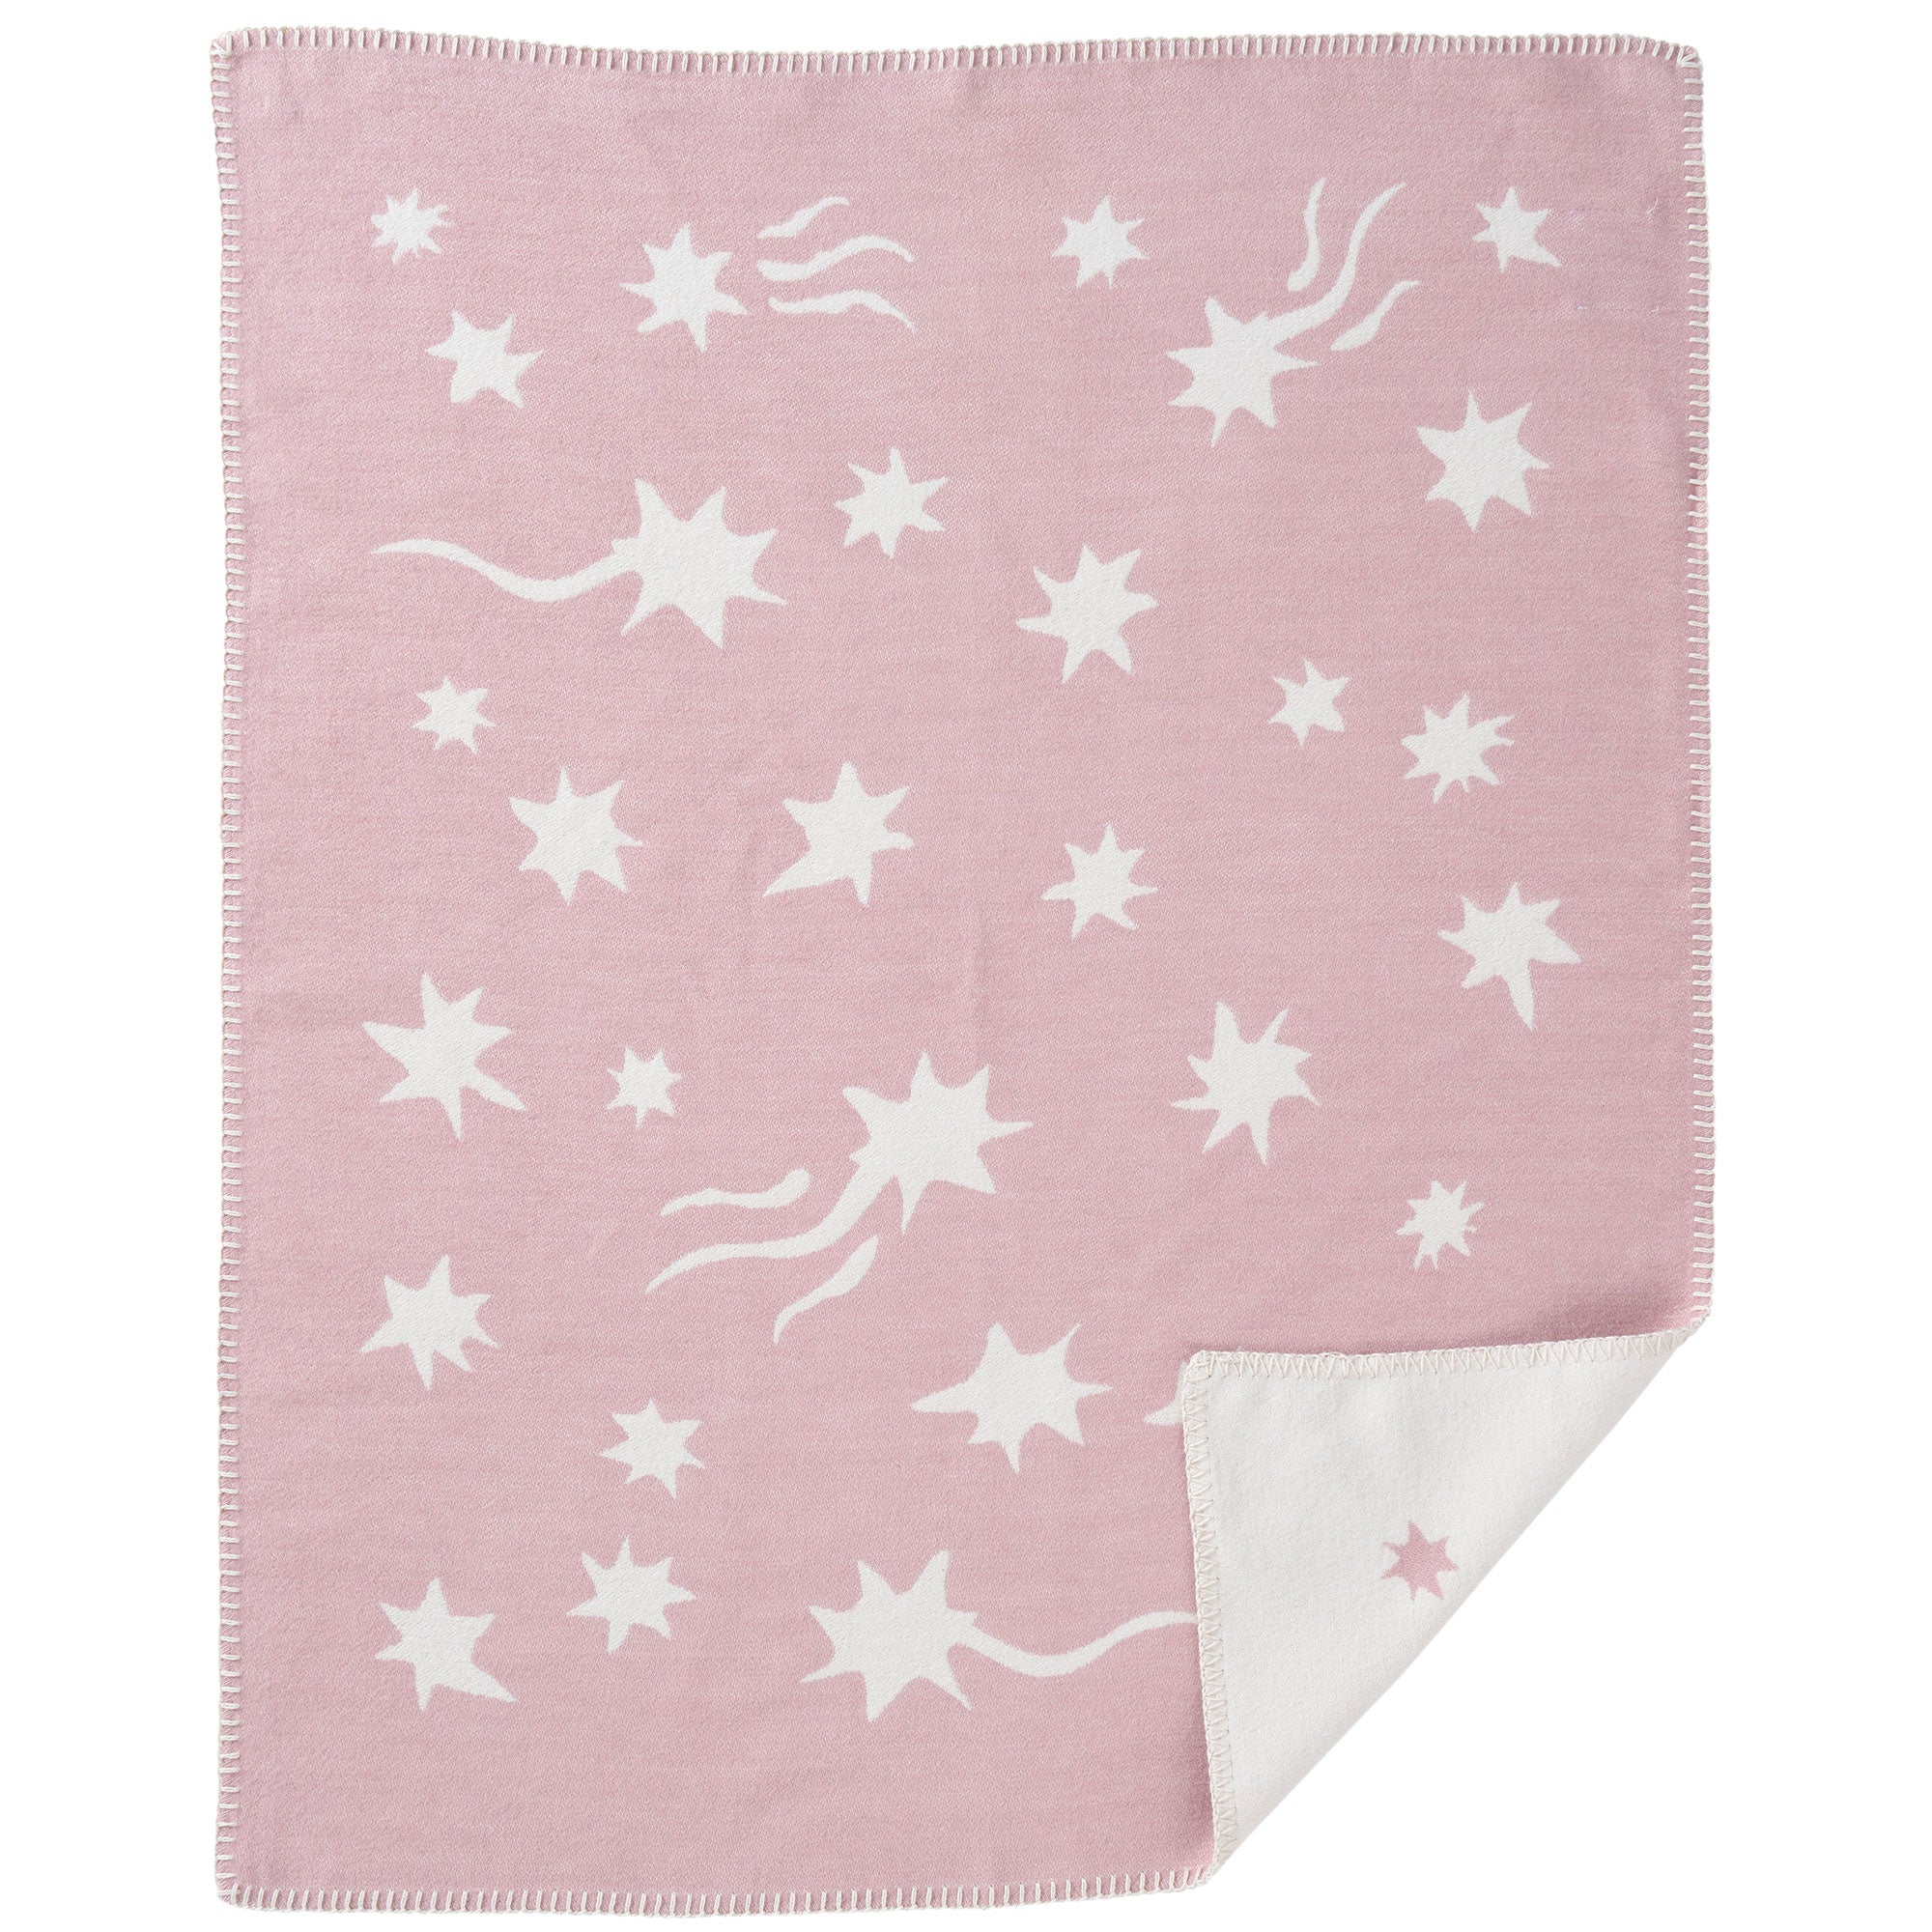 Shooting Star Pink 70x90cm Organic Brushed Cotton Blanket